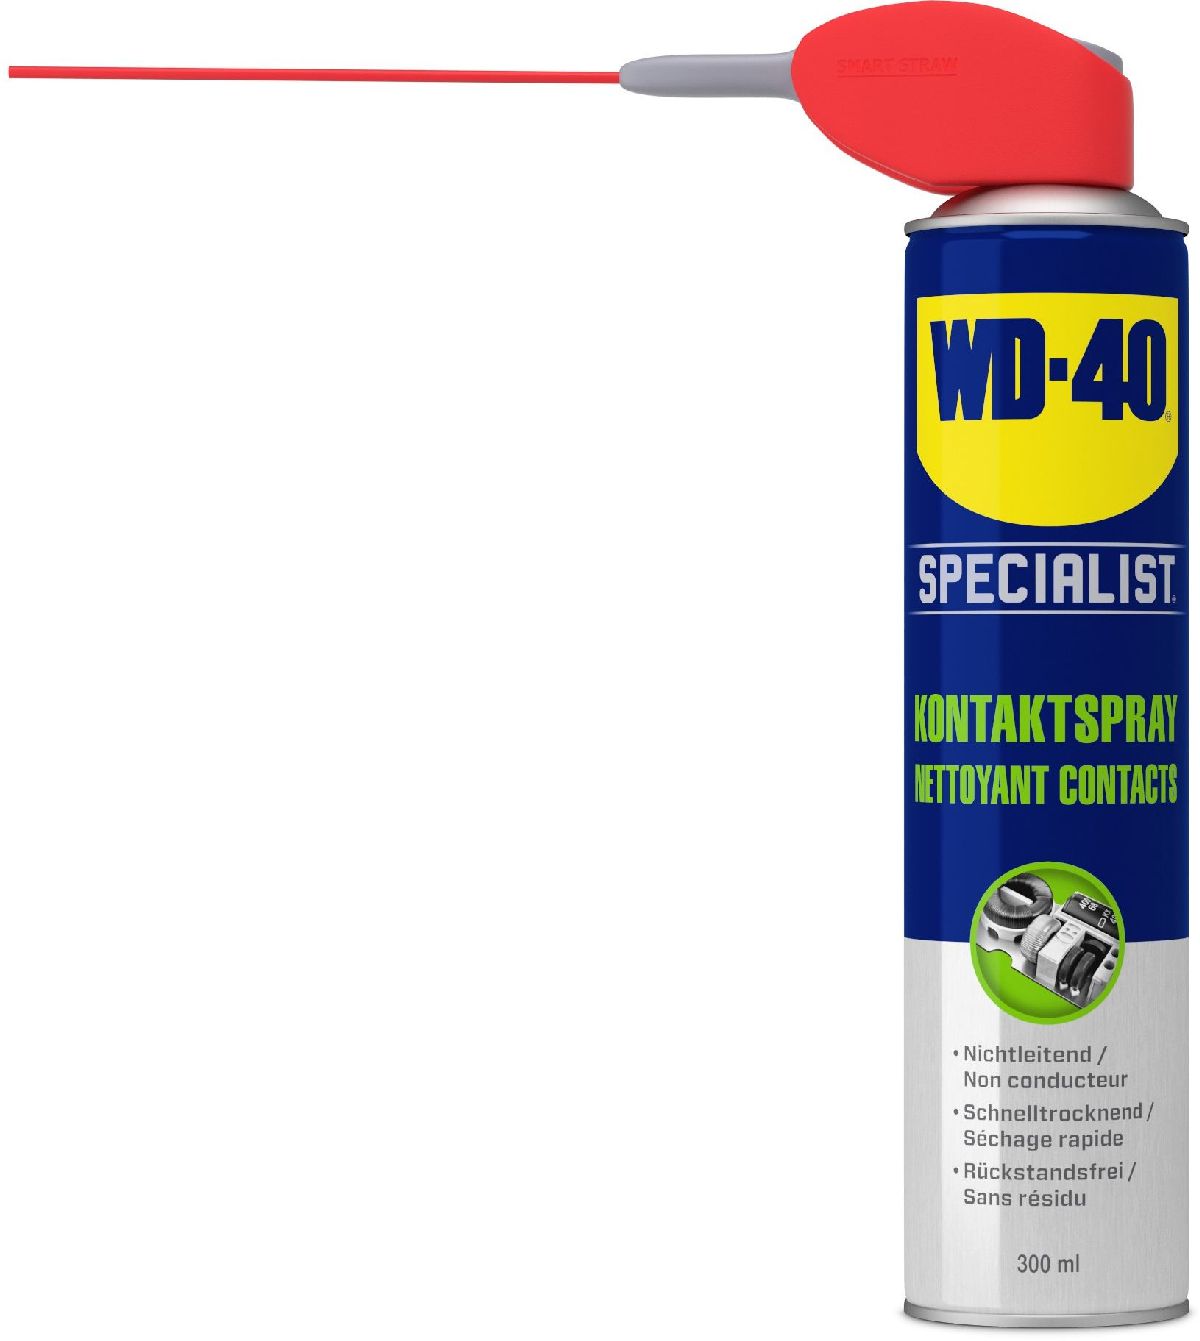 WD-40 Specialist Kontaktspray Spraydose 300 ml